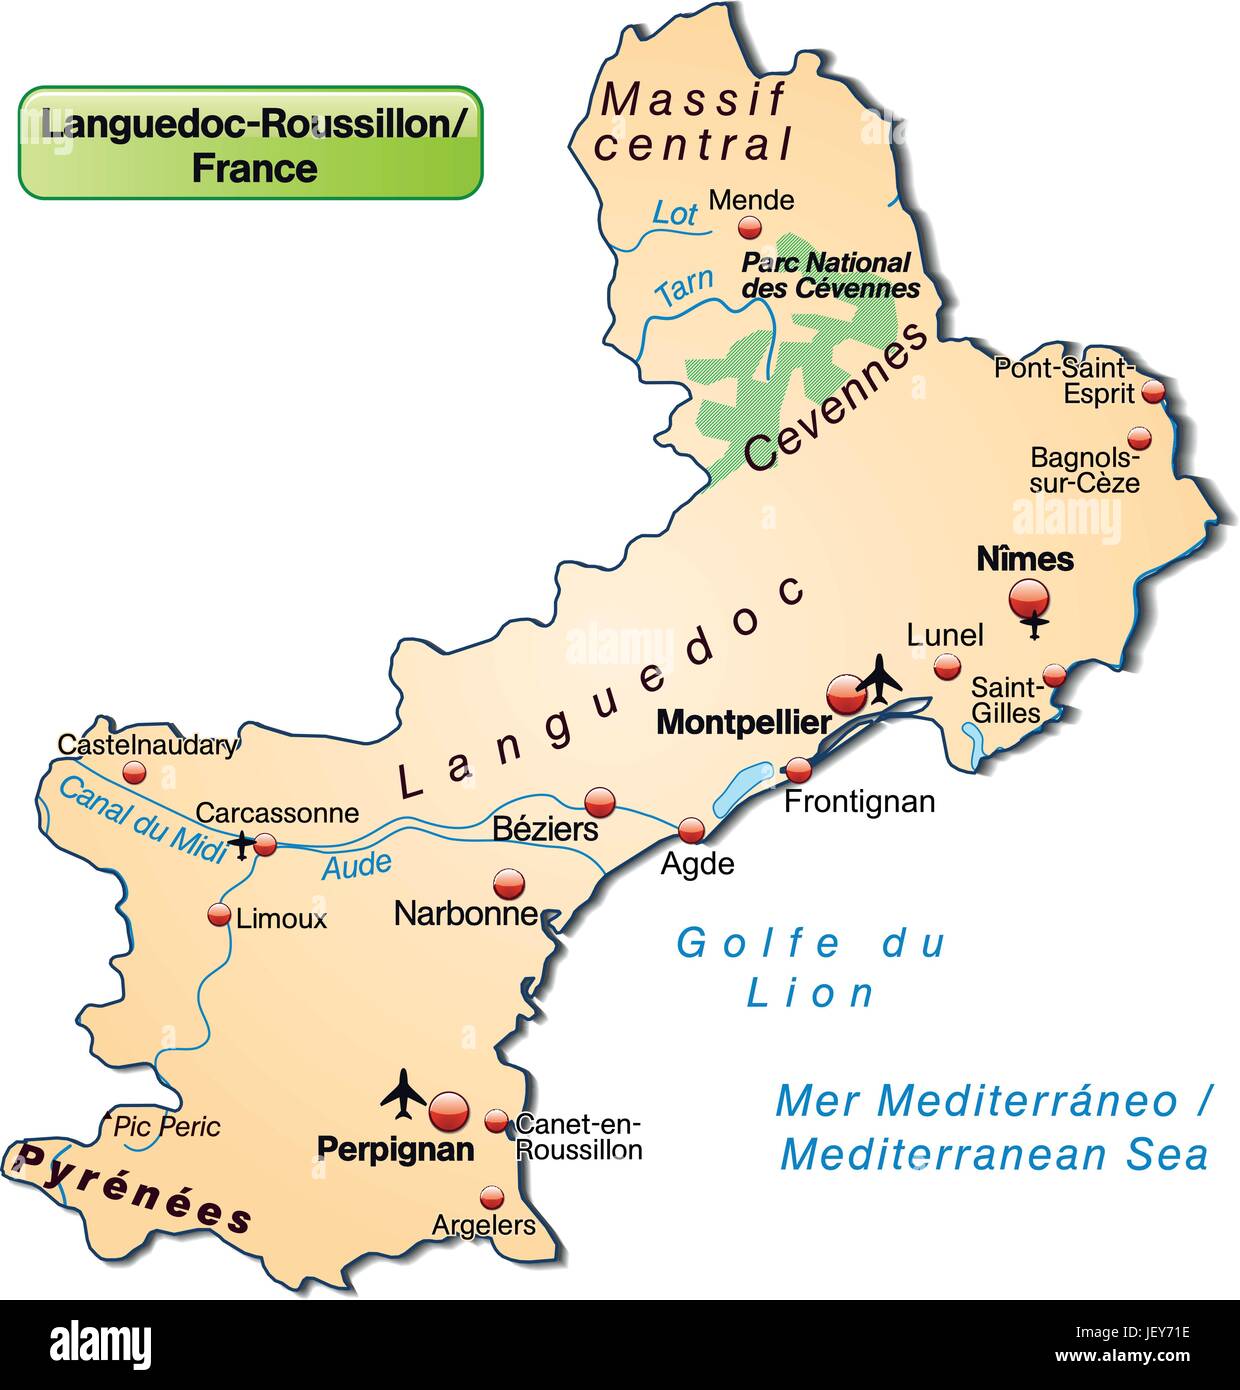 Inselkarte von Languedoc-Roussillon als eine Übersichtskarte in pastelorange Stock Vektor